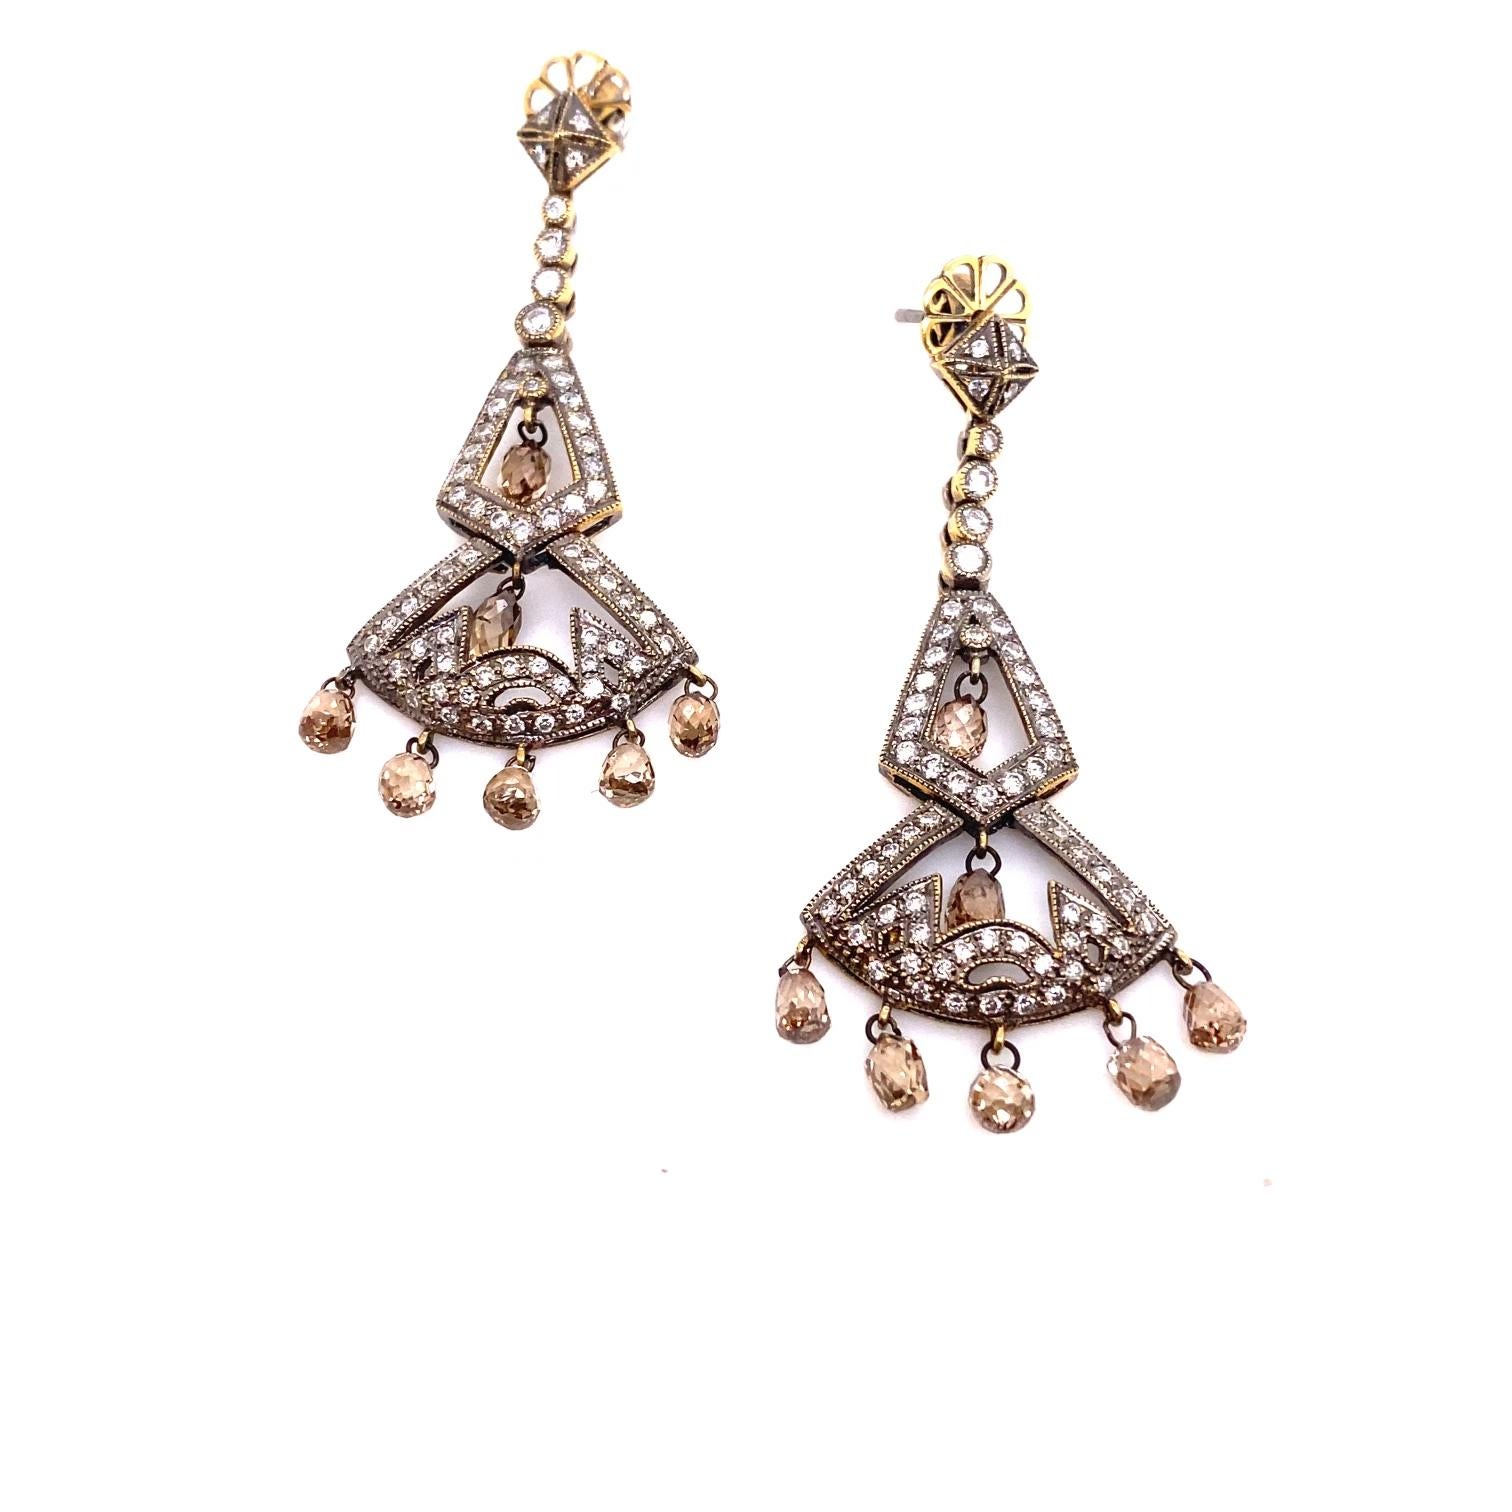 Ein prächtiges Paar Kronleuchter-Diamantohrringe mit viktorianisch inspiriertem Charme. Diese aus 18 Karat Gold gefertigten Ohrringe bestehen aus 4 Karat champagnerfarbenen und runden Diamanten.  Champagnerfarbene Diamanten mit insgesamt 2,5 Karat